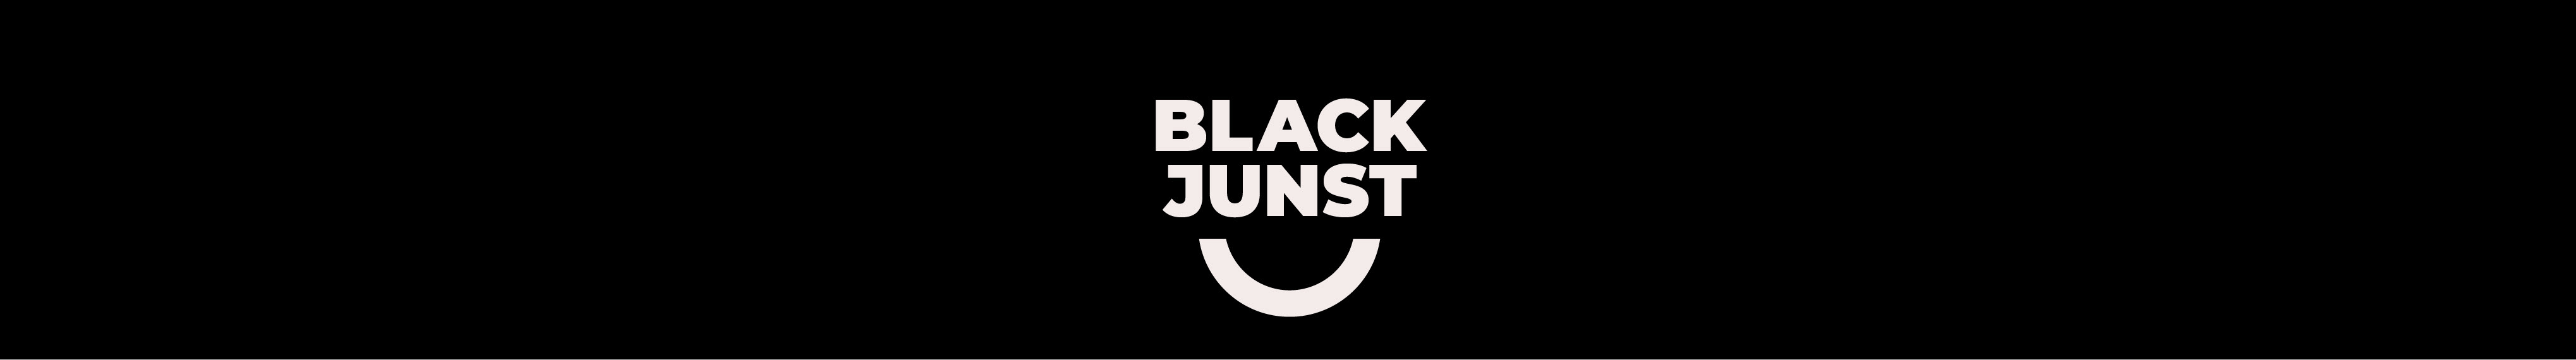 Black Junst's profile banner